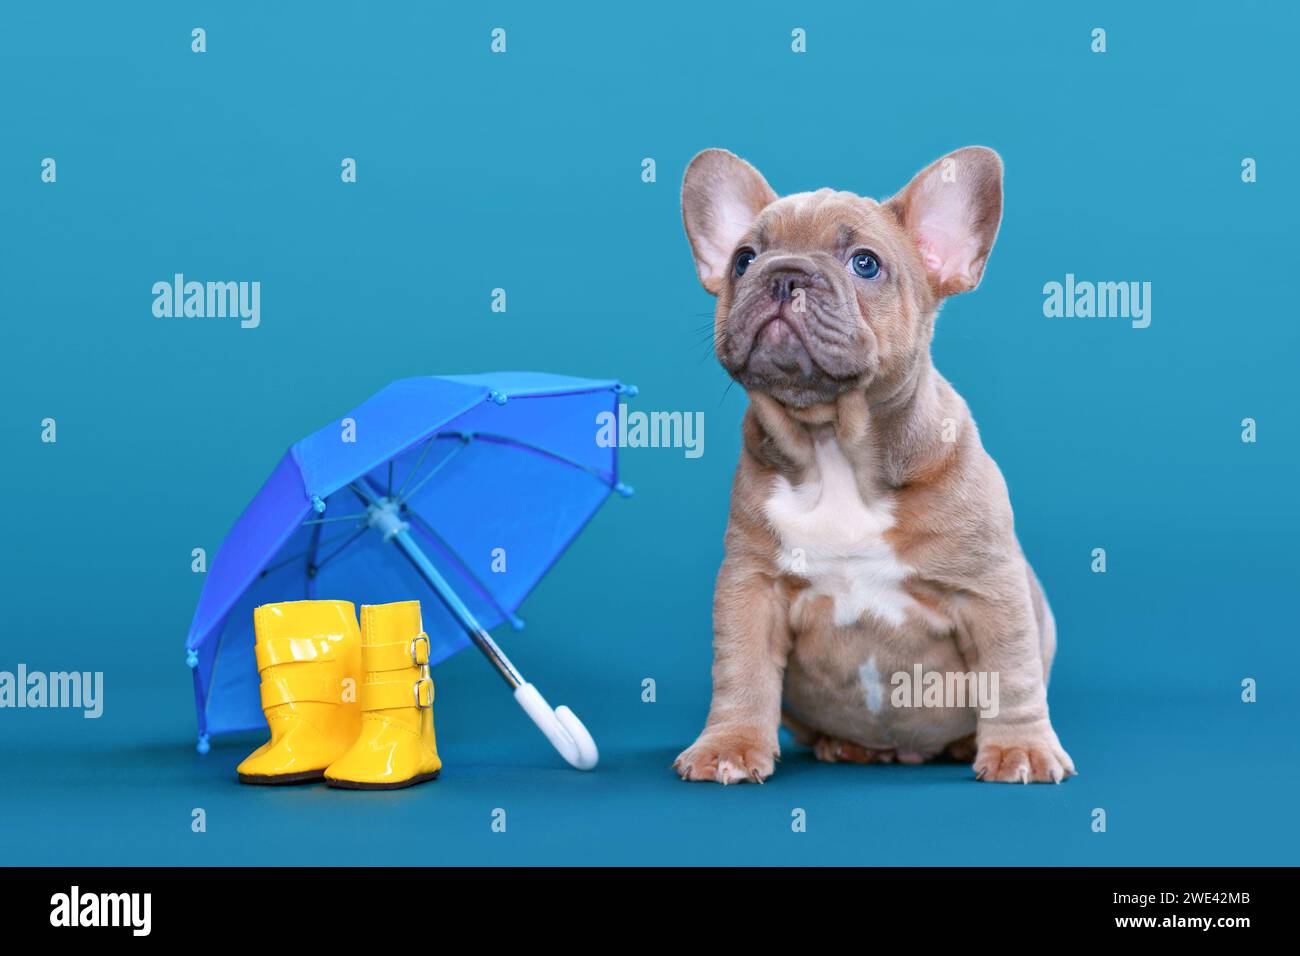 Niedliches blaues Kitz Französisch Bulldog Hund Welpe neben Regen Gummistiefel und Regenschirm auf blauem Hintergrund Stockfoto